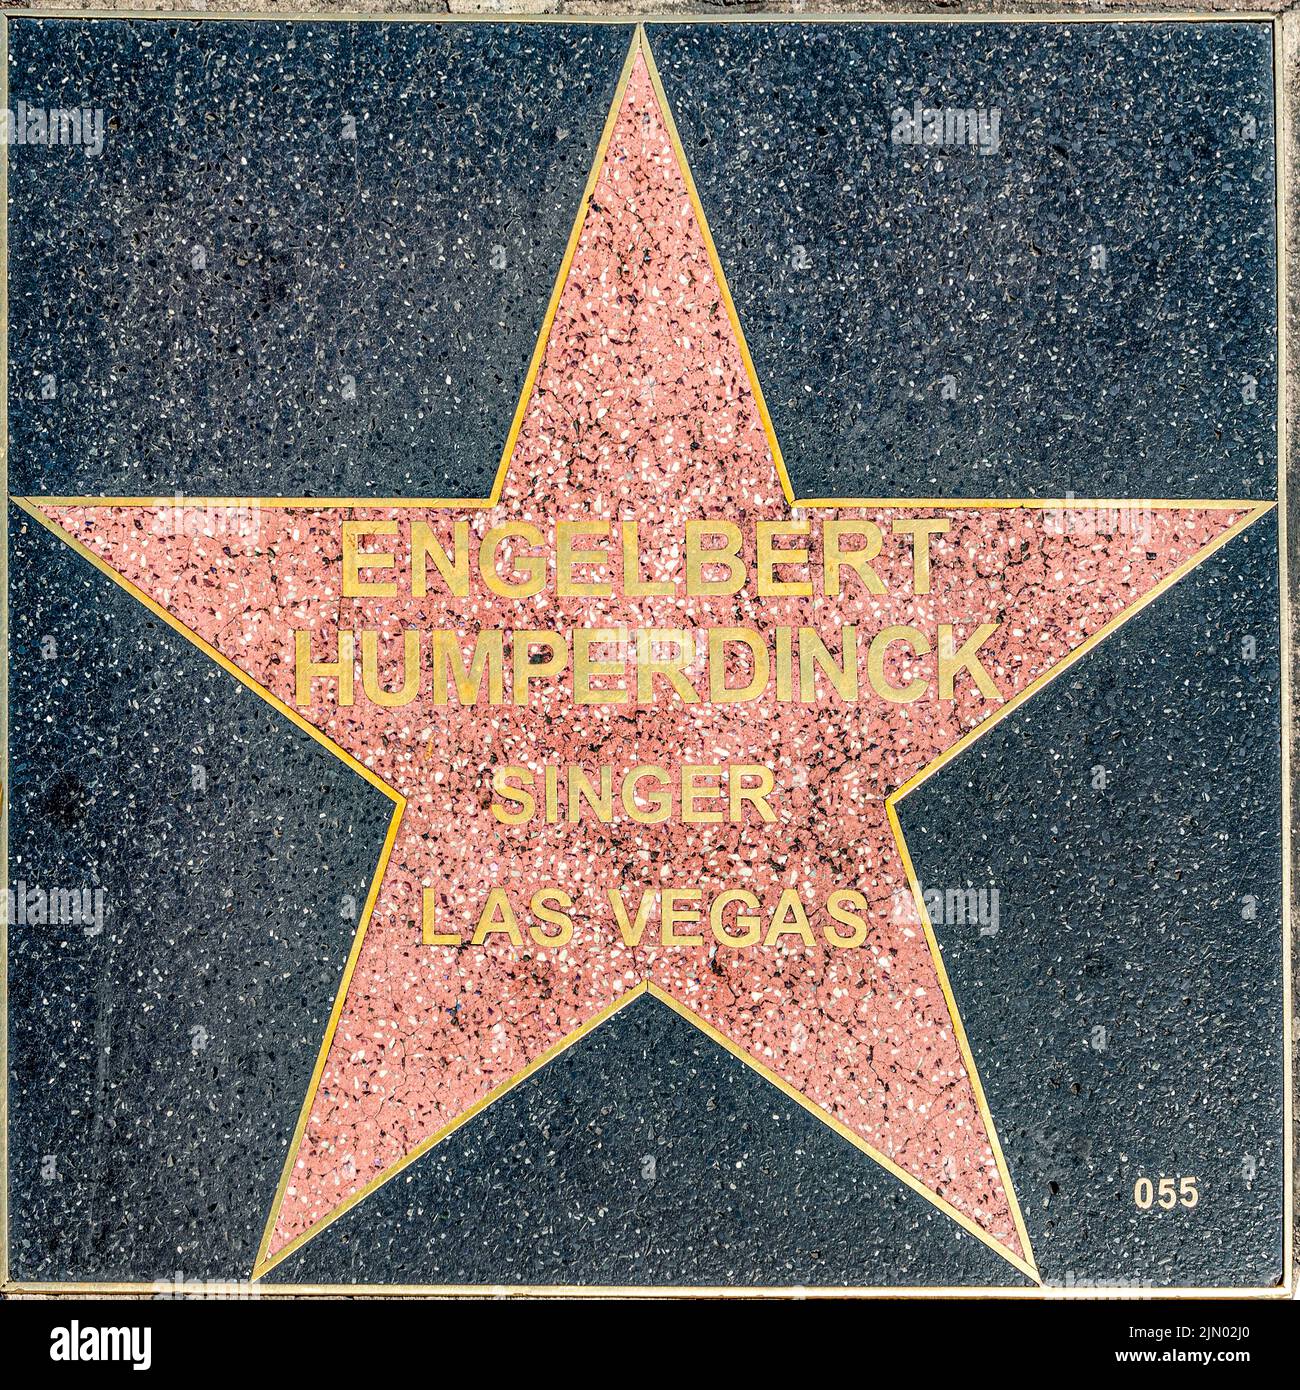 Las Vegas, USA - 23. Mai 2022: Engelbert Humperdinck wird beim Walk of Fame in Las Vegas am Strip mit einem Namensschild geehrt. Stockfoto